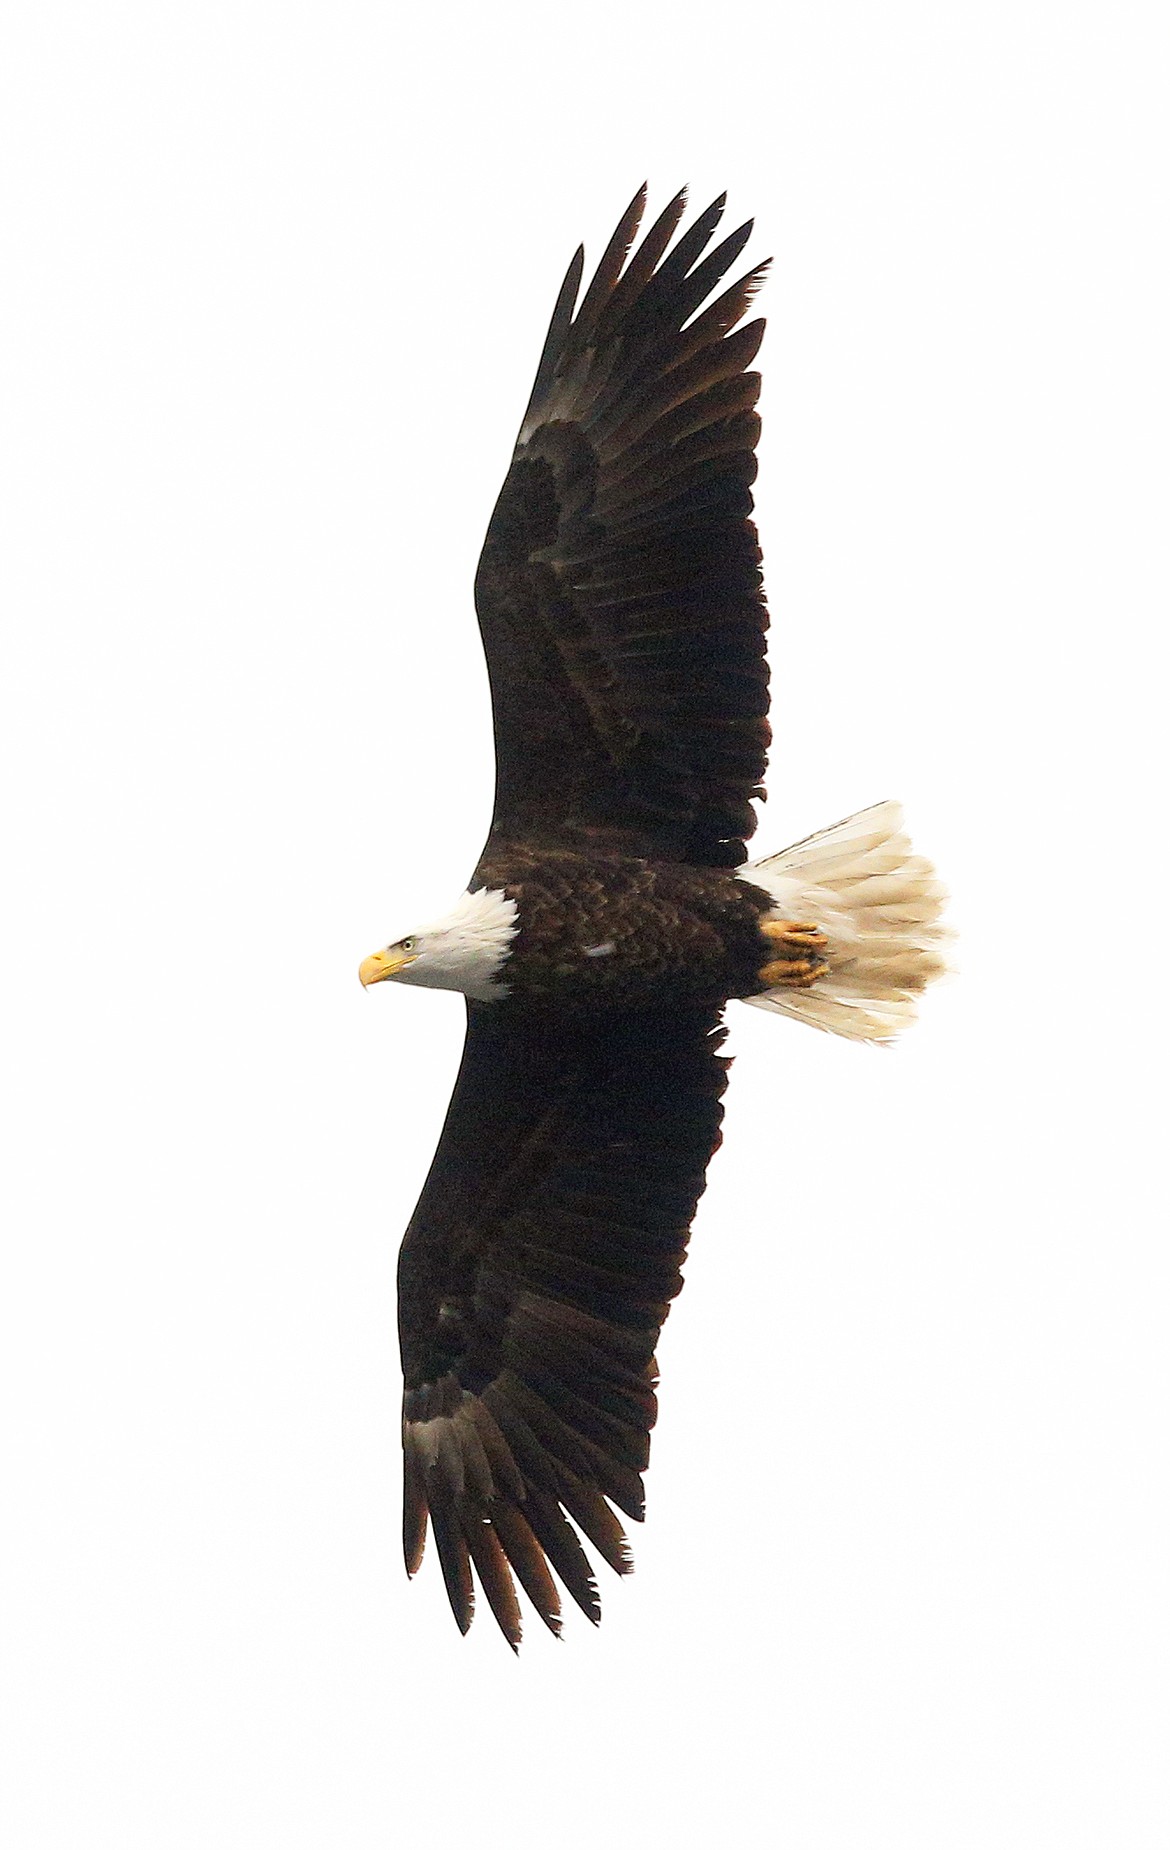 A bald eagle glides through the sky.